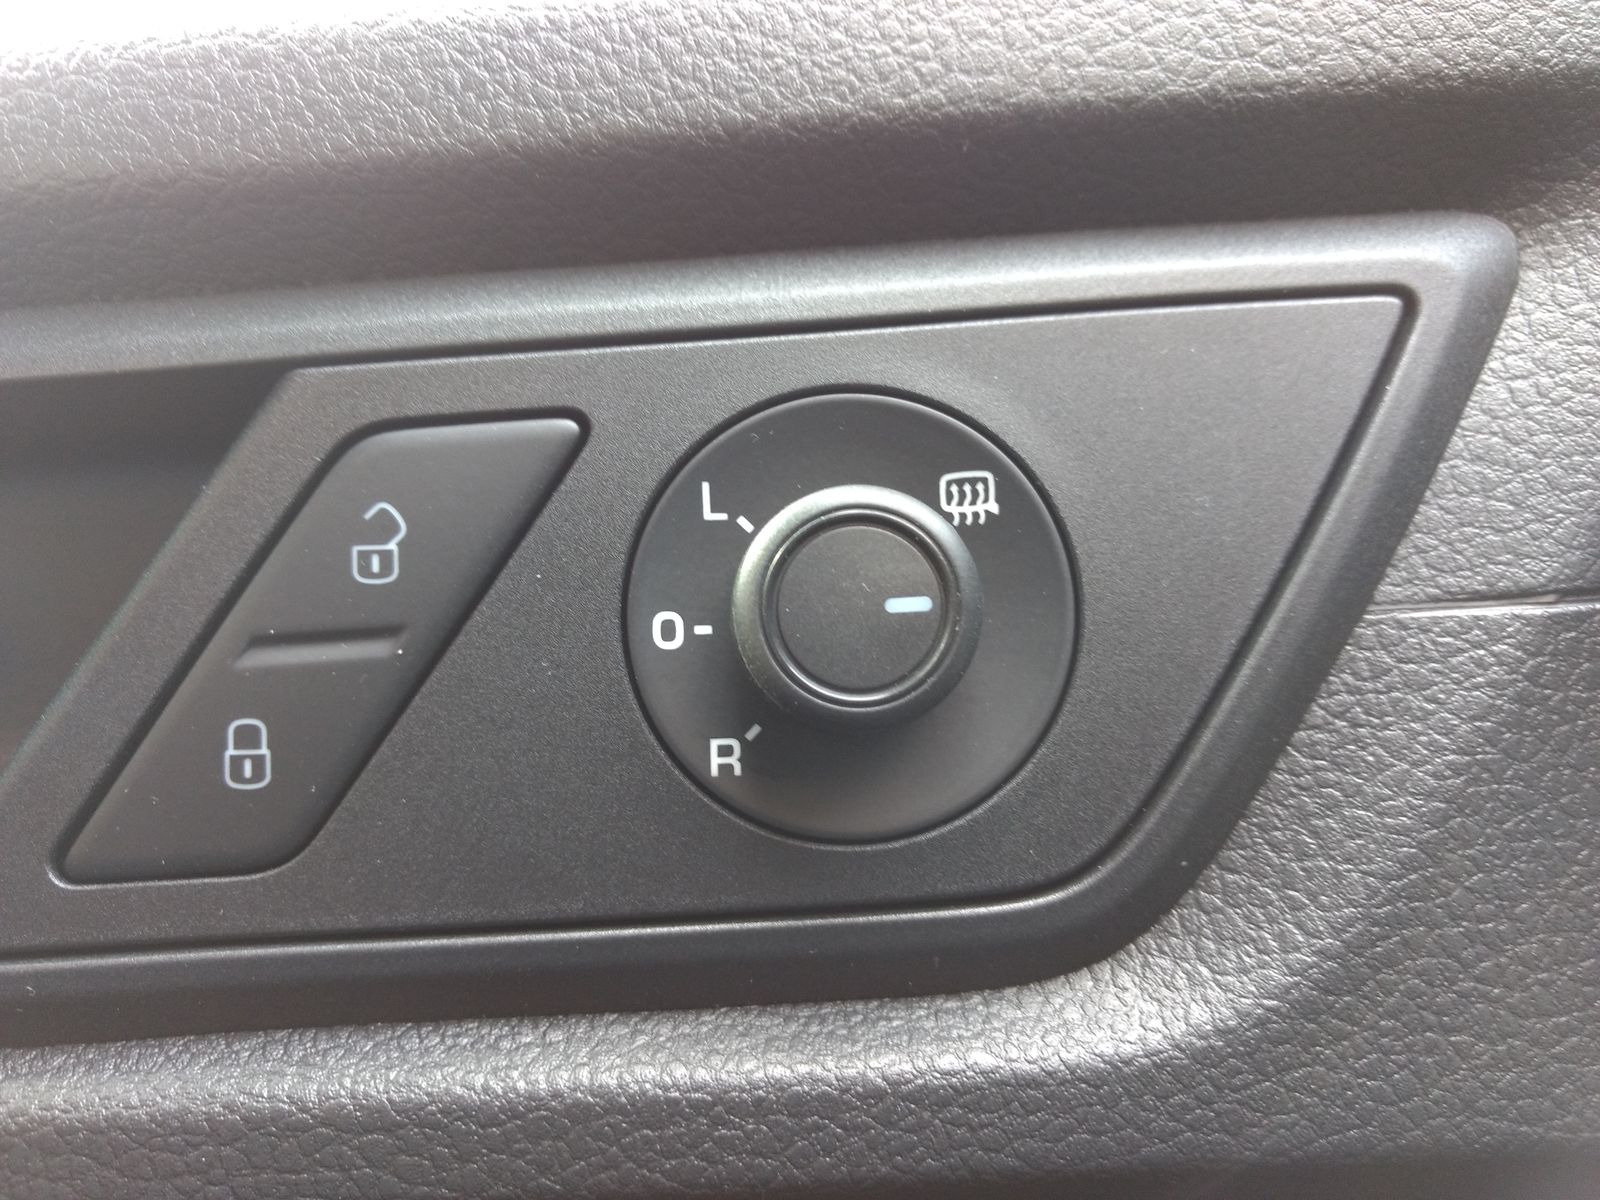 Schalter beheizbare Außenspiegel des VW Caddy - VW Caddy Anleitungen, FAQs,  Tipps & Tricks - VW Caddy Forum + Community